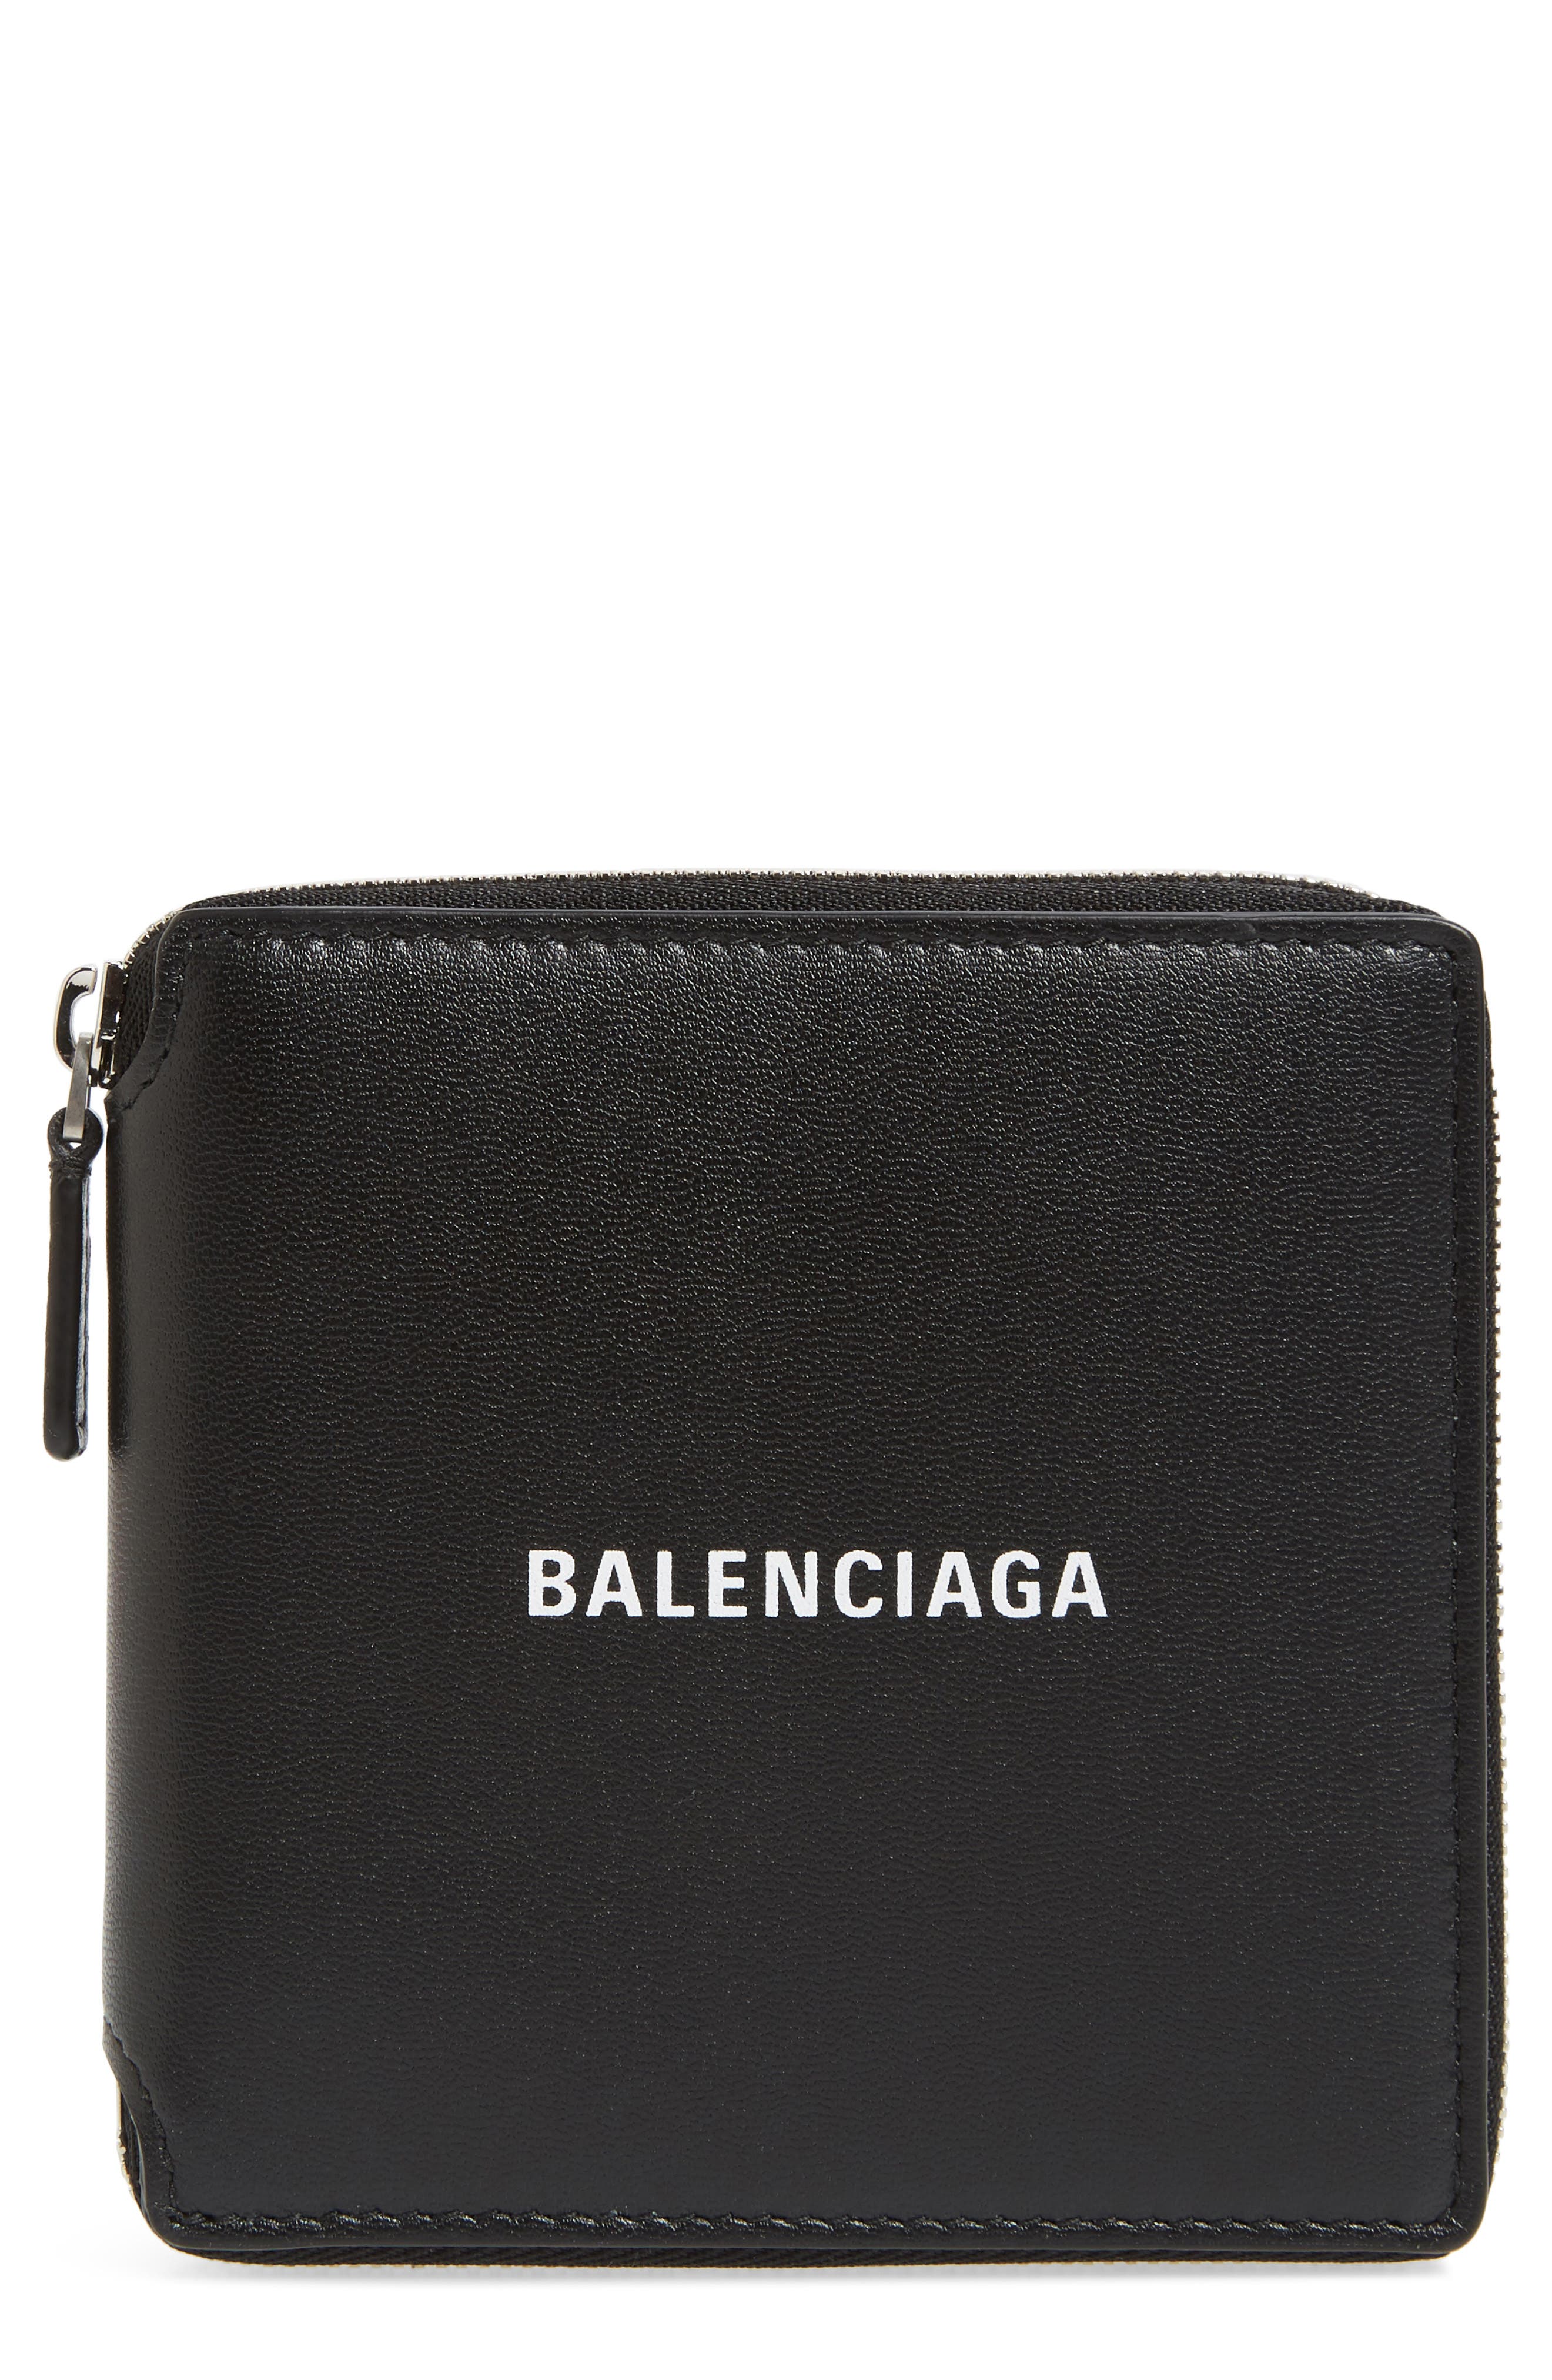 balenciaga zip around wallet